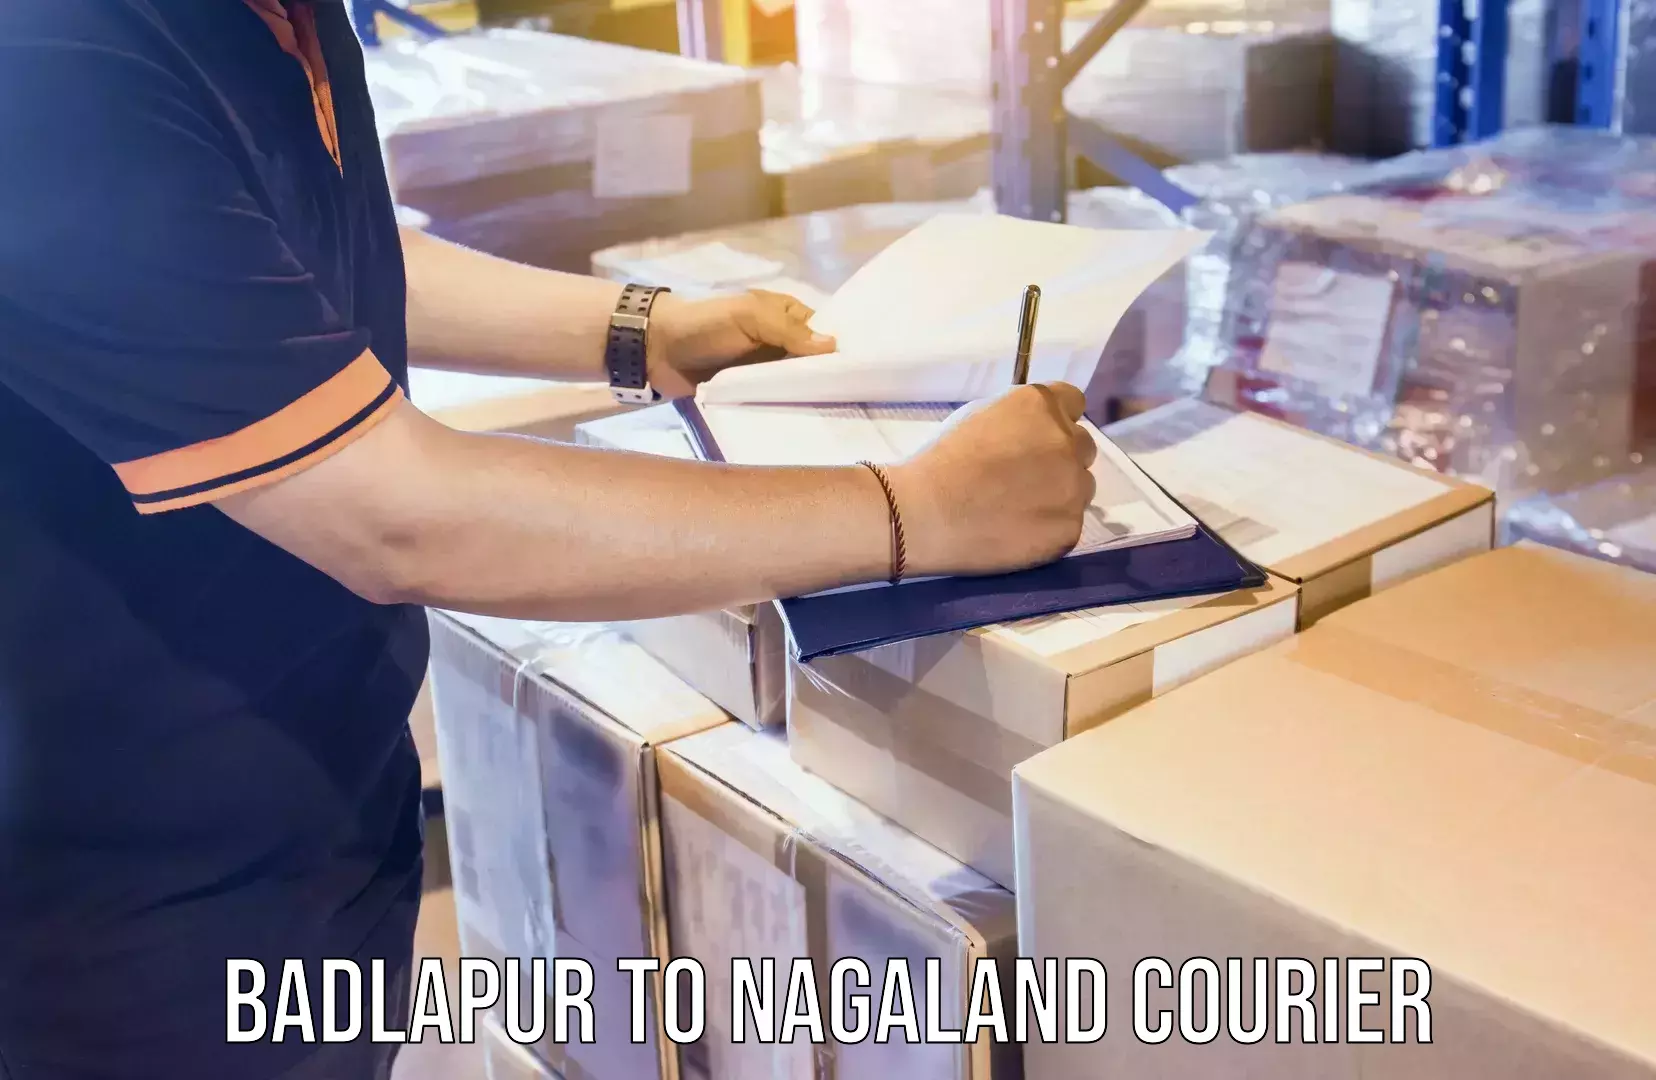 24/7 courier service Badlapur to Nagaland